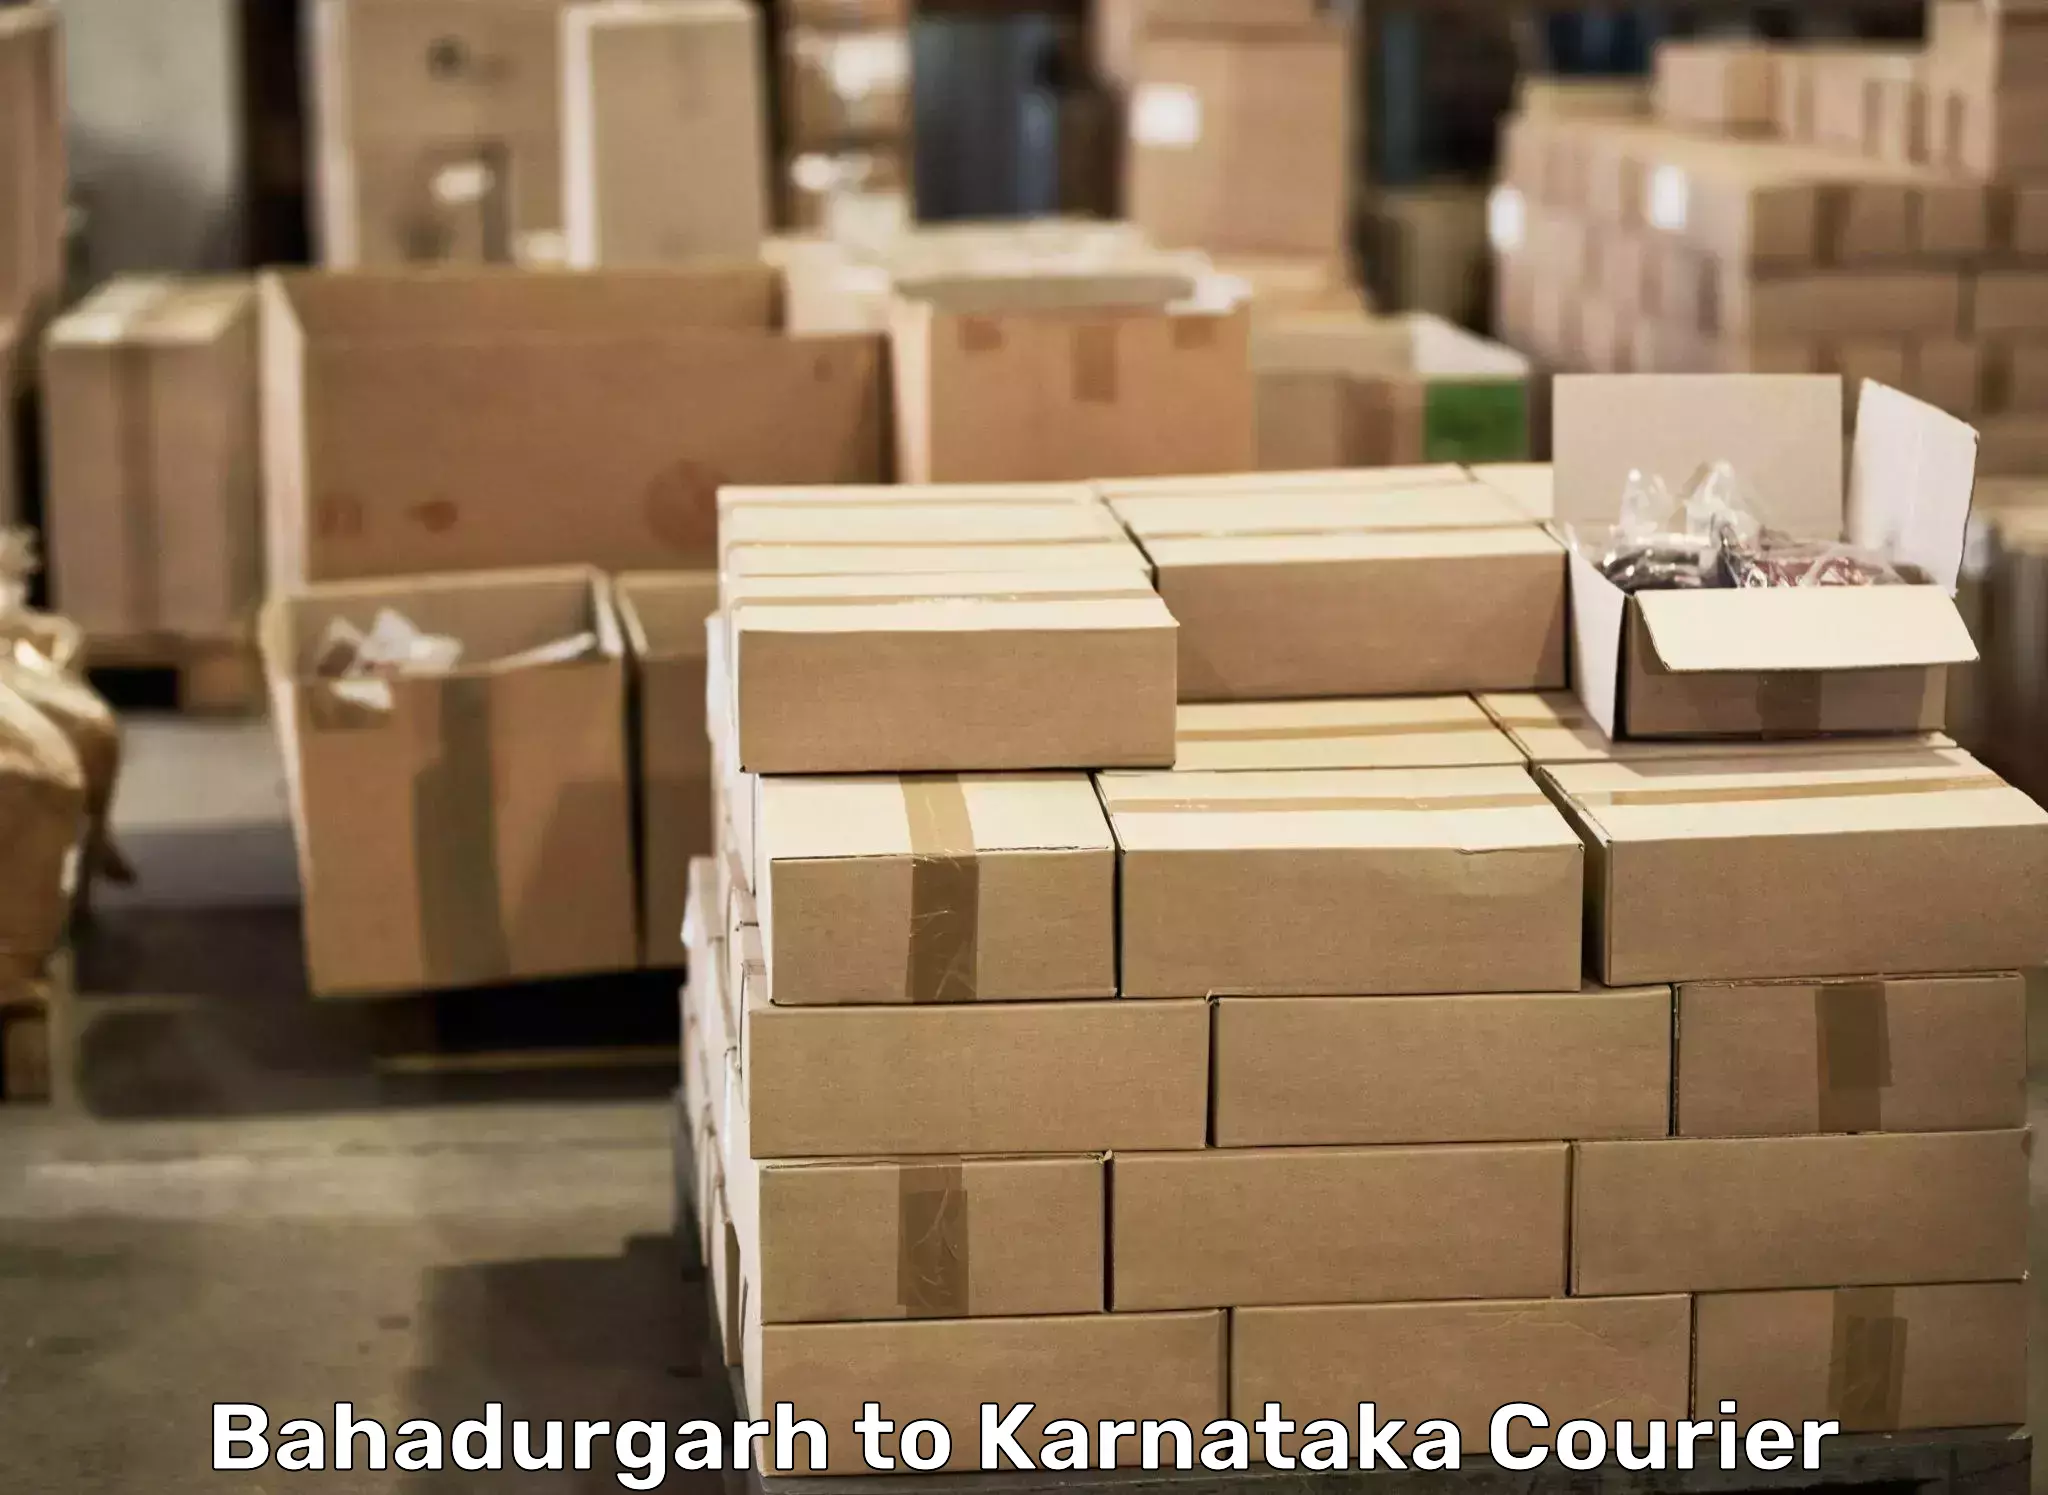 Hassle-free relocation Bahadurgarh to Krishnarajpete